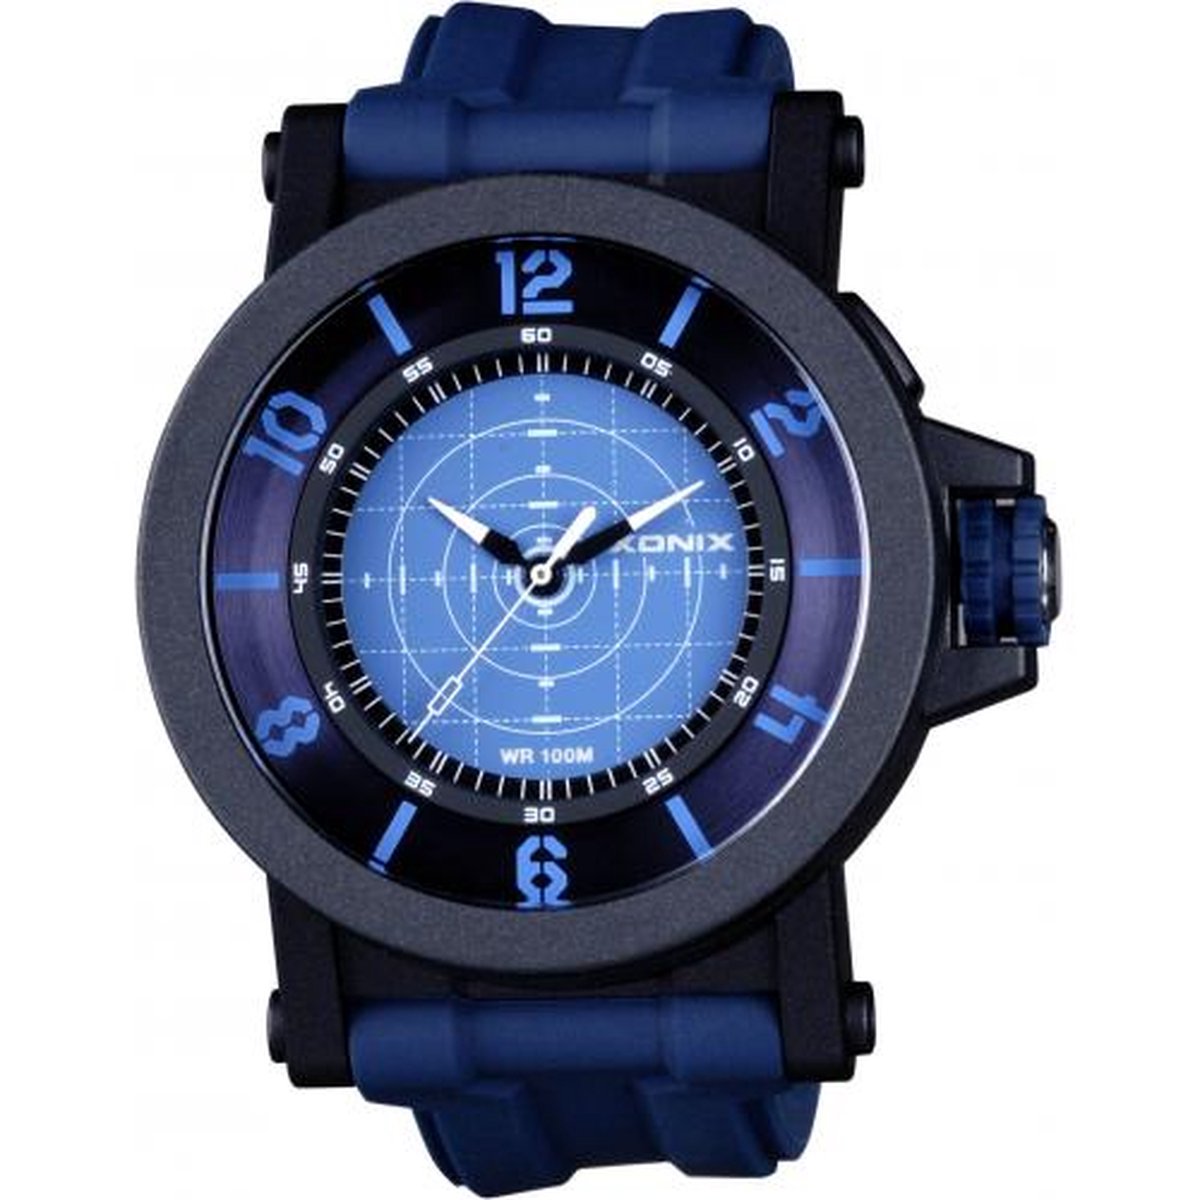 Xonix UN-004 - Horloge - Analoog - Mannen - Heren - Siliconen band - ABS - Cijfers - Streepjes - Achtergrondverlichting - Waterdicht - 10 ATM - Donkerblauw - Blauw - Zwart